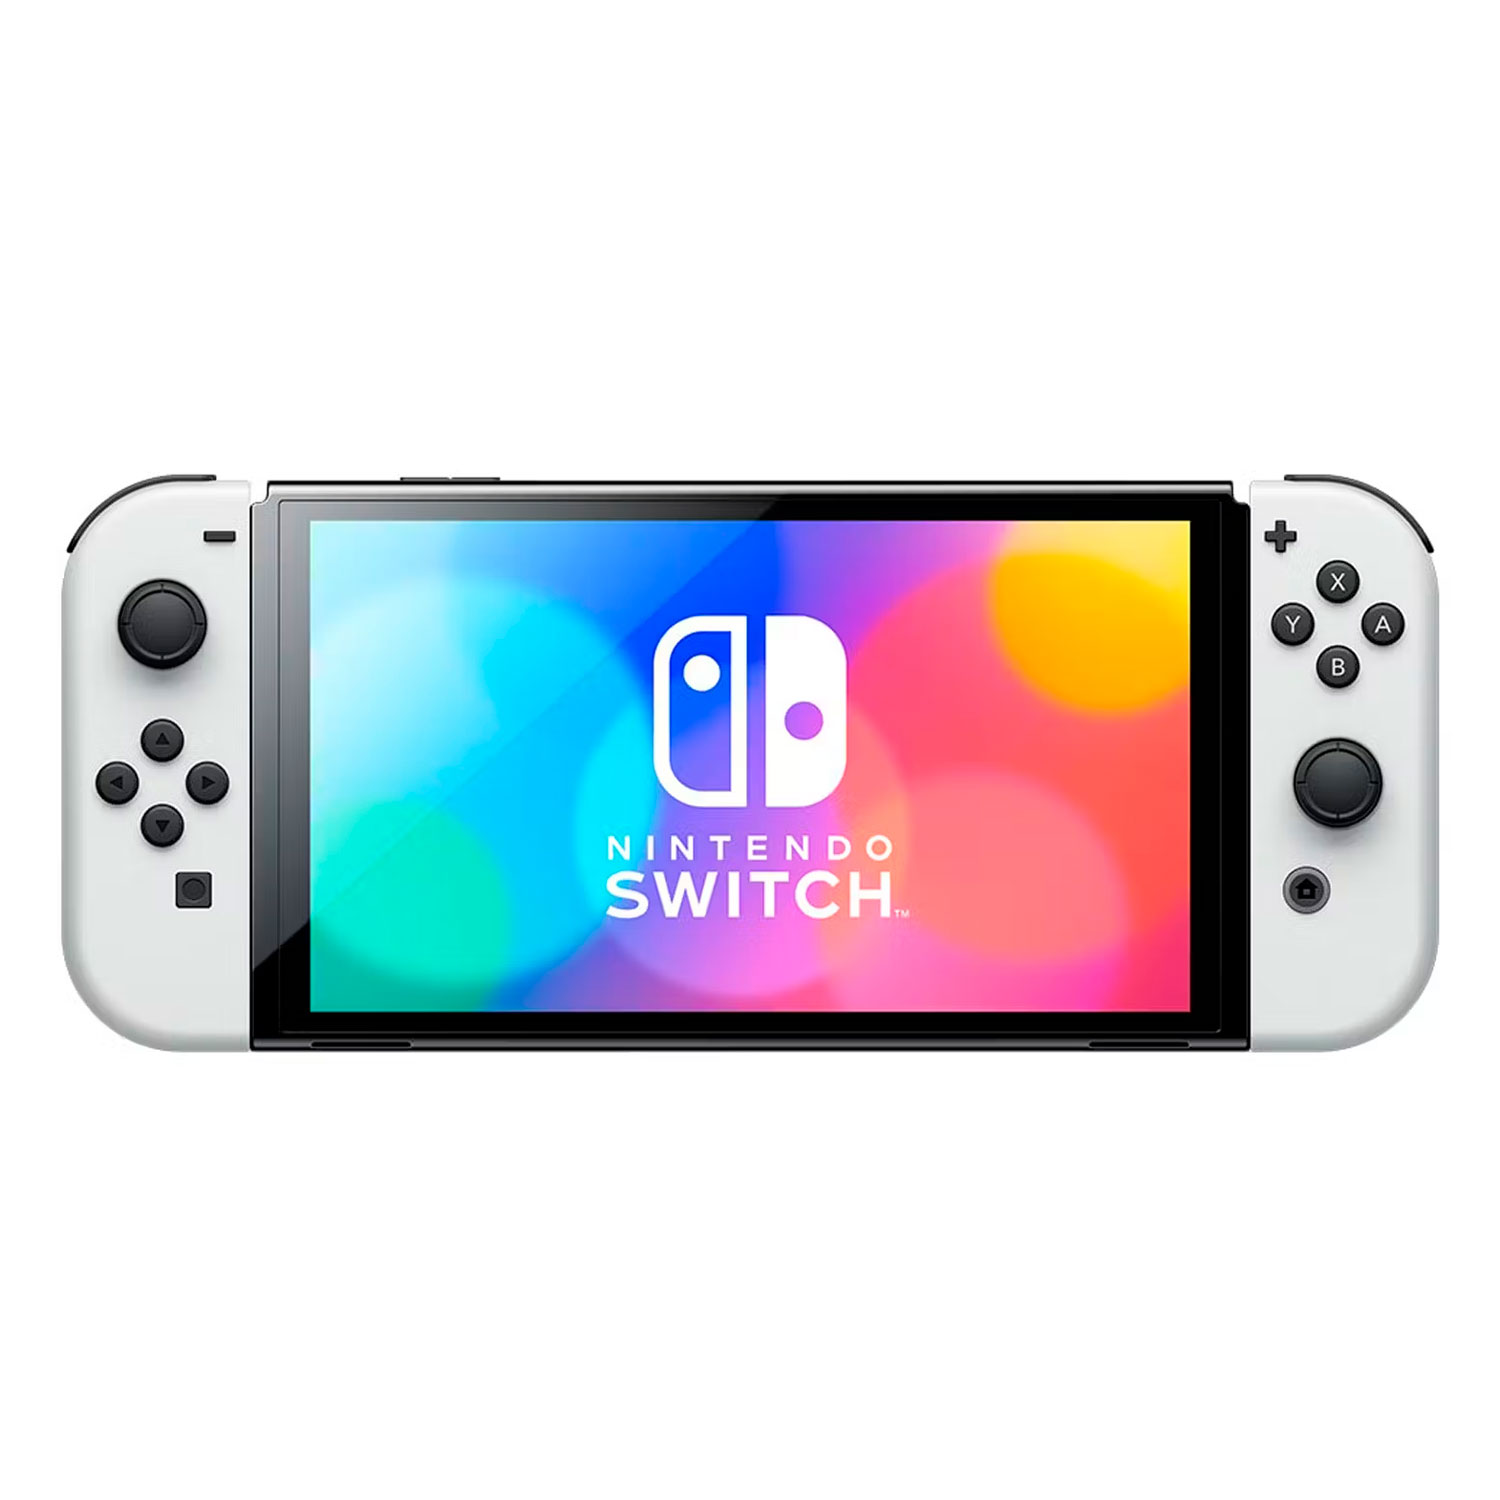 Console Nintendo Switch OLED 64GB Japonês - Branco (HEG-S-KAAAA) (Caixa Danificada)	